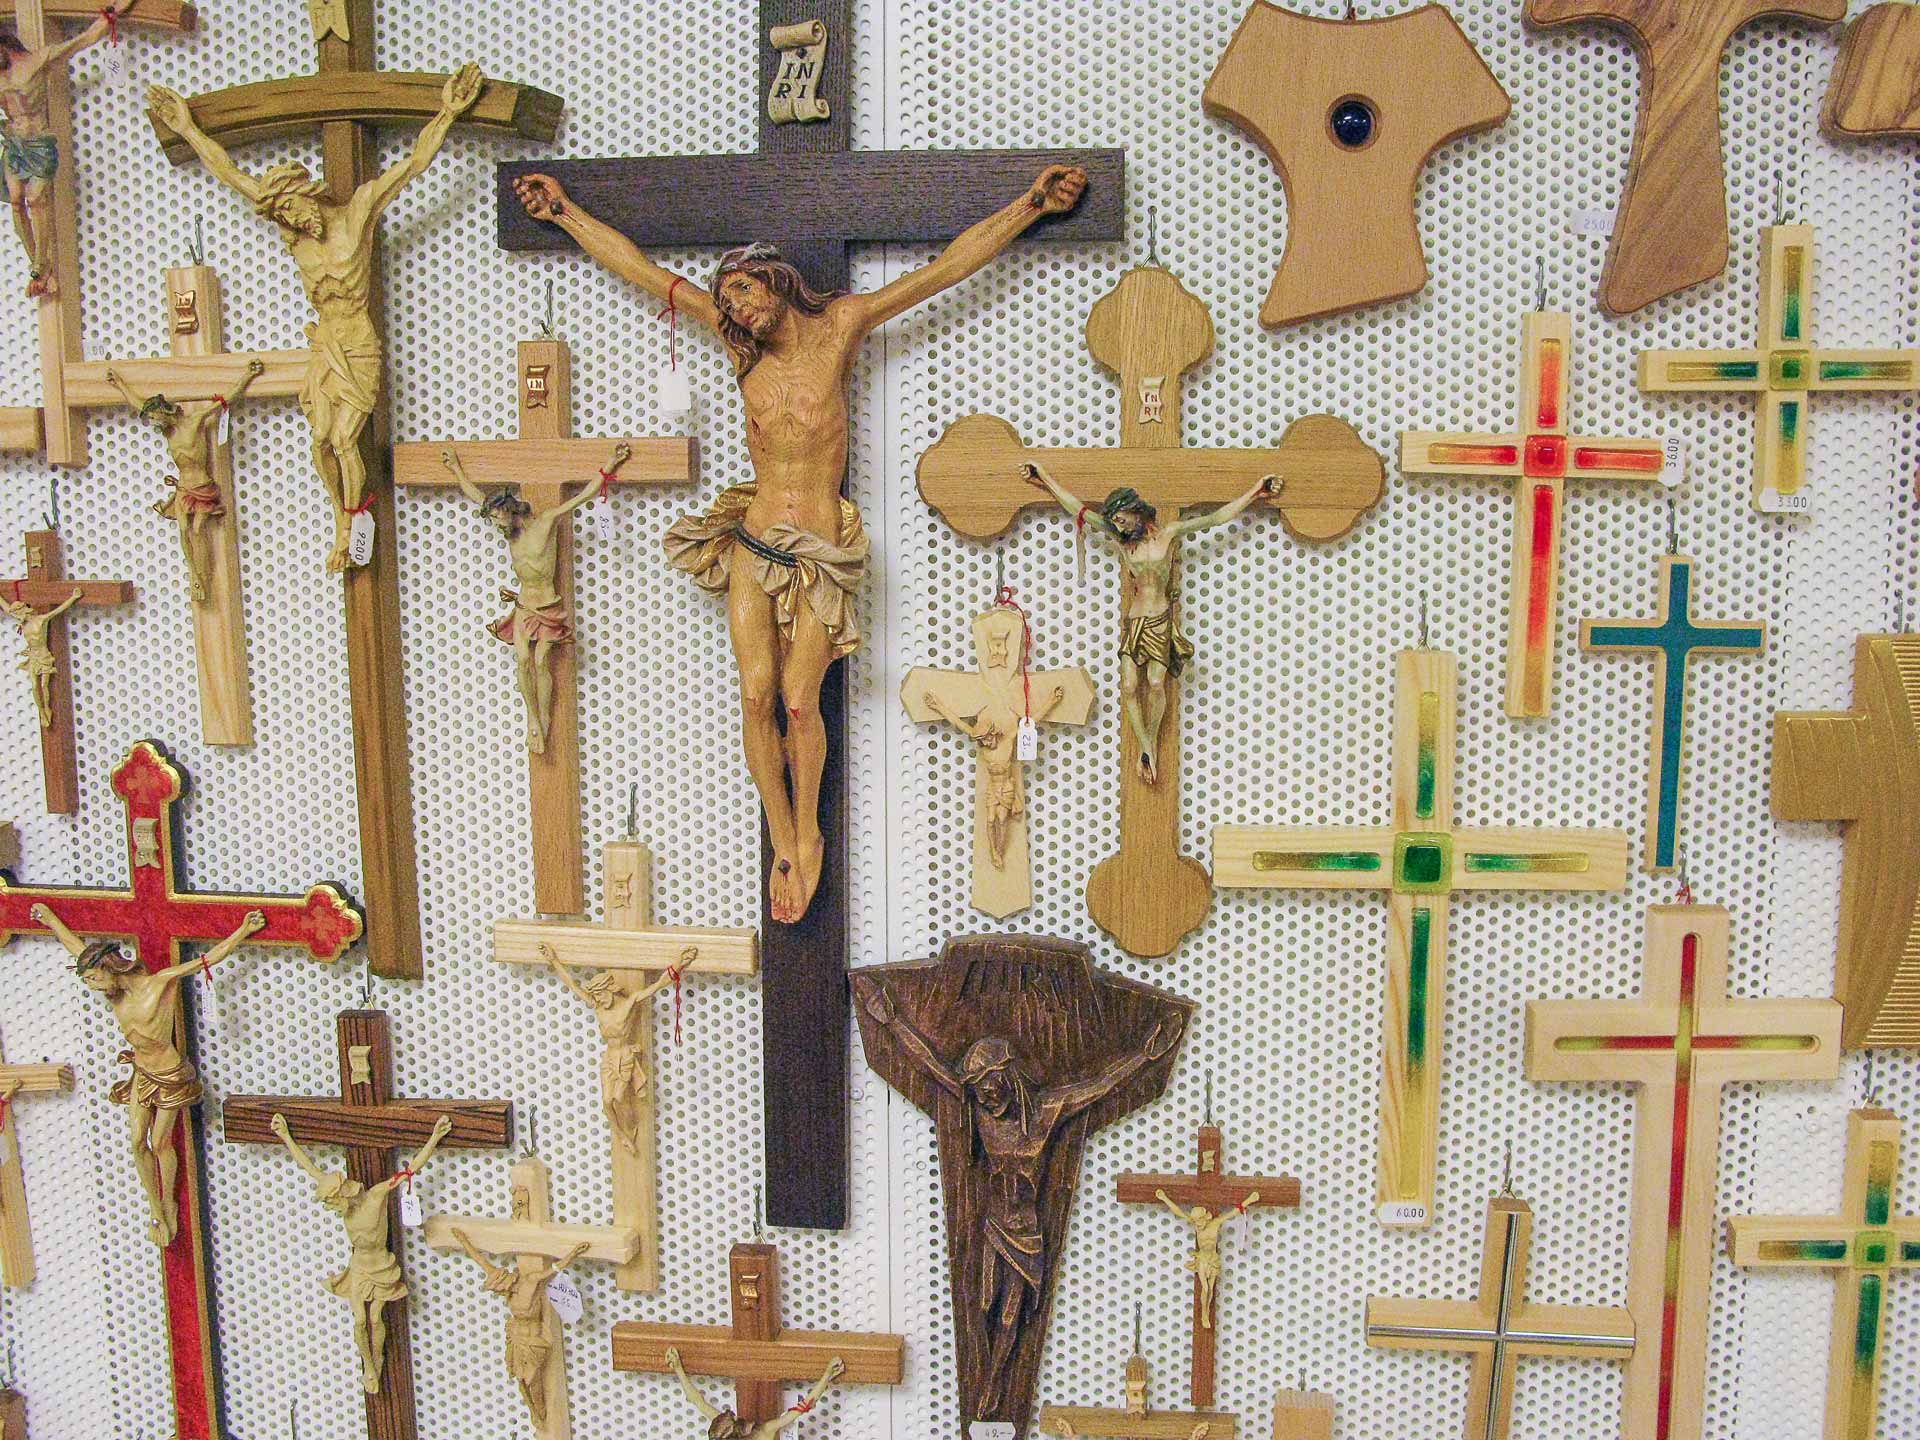 «Nein, Gott ist kein Mann, Gott ist die Quelle des Lebens», sagt Jacqueline Keune. Diese Kreuze in einem Laden im Wallfahrtsort Einsiedeln stehen für  das «verengte und verzerrte Bild von Gott», gegen das die Theologin anschreibt. | © 2010 Dominik Thali